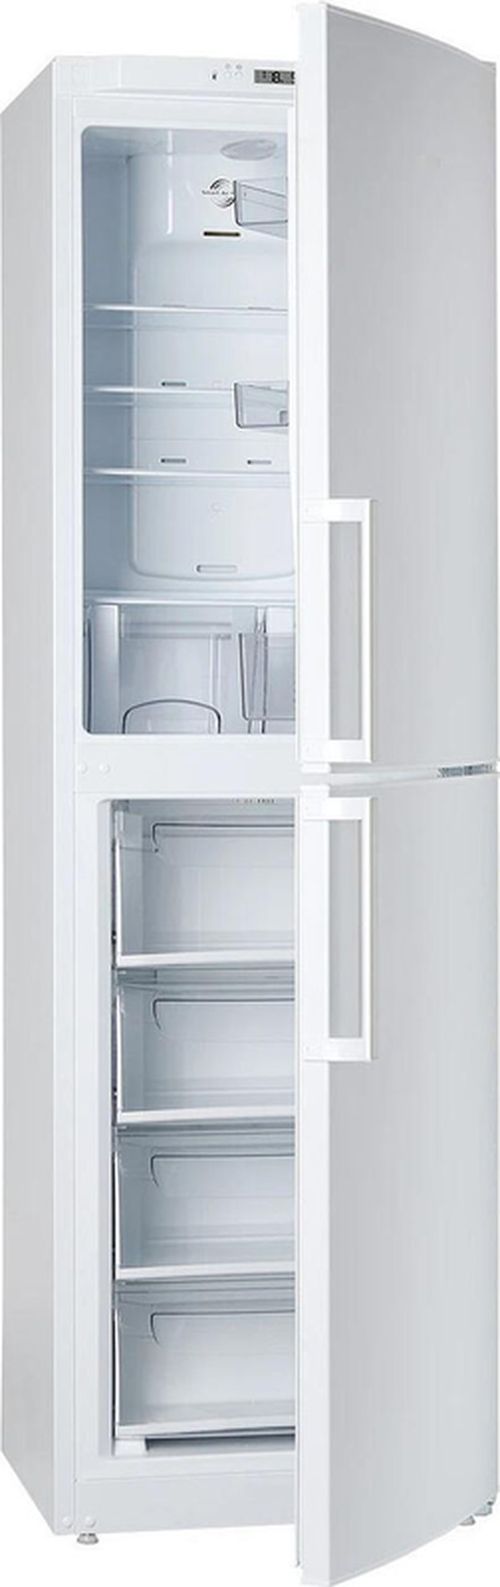 купить Холодильник с нижней морозильной камерой Atlant XM 4423-000-N в Кишинёве 